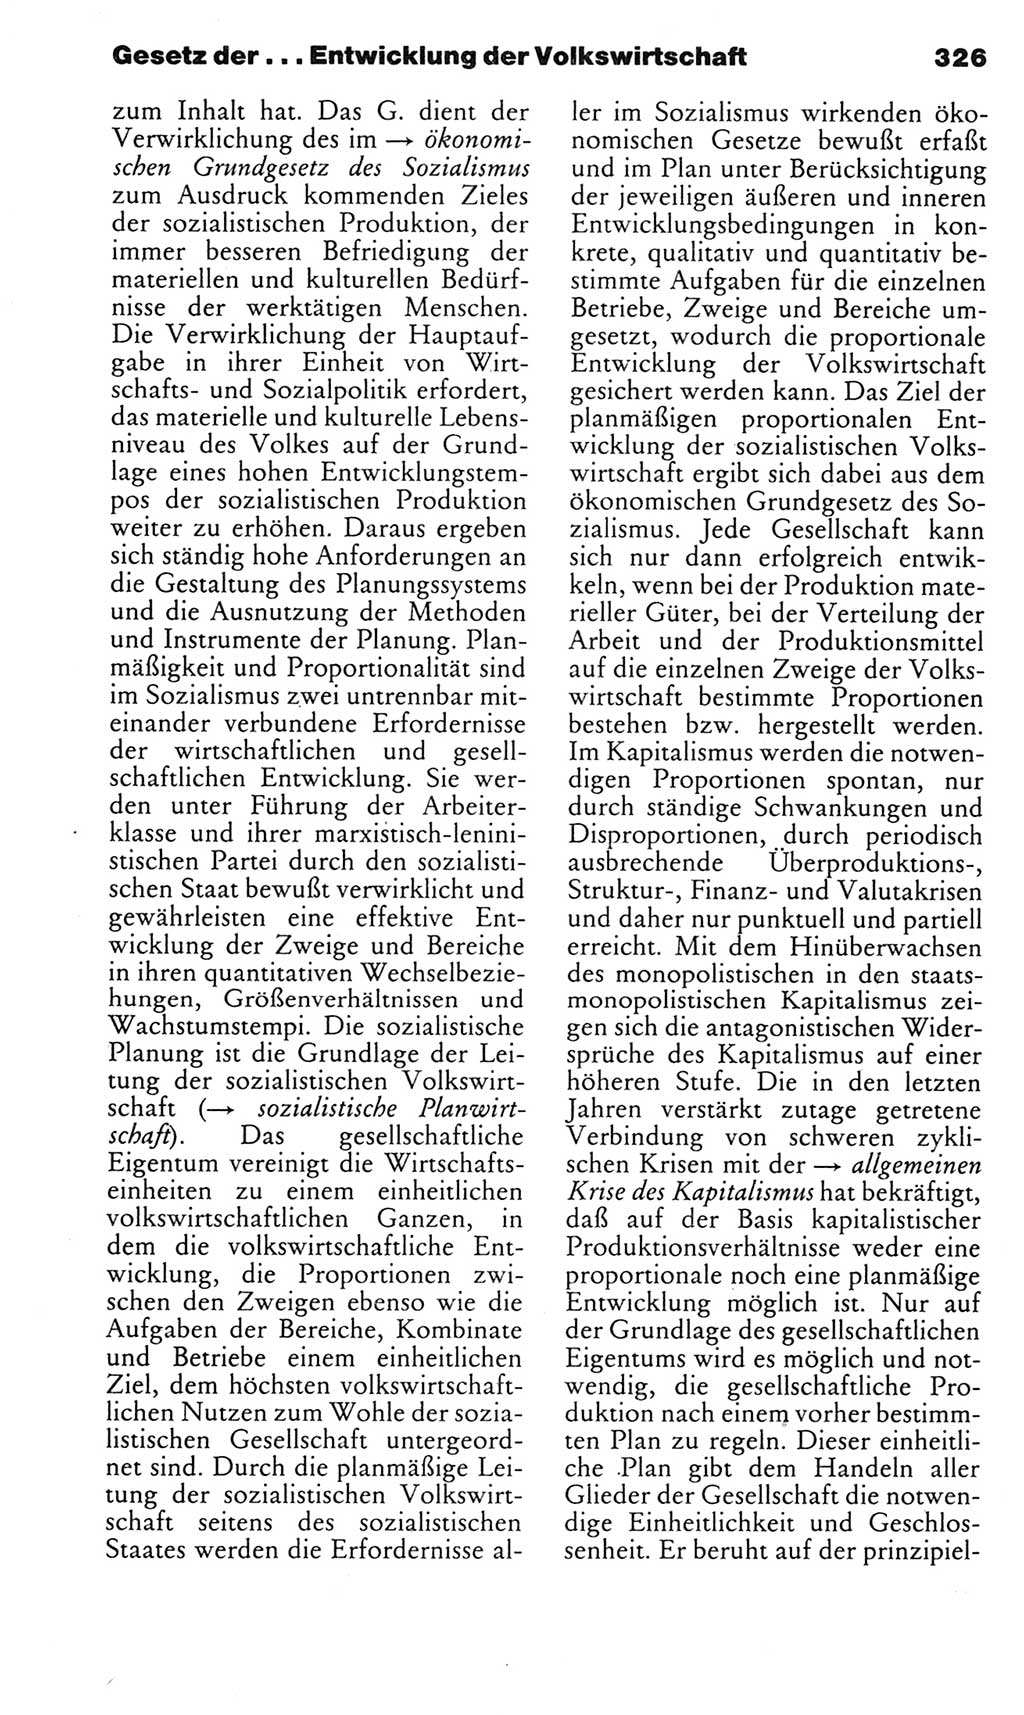 Kleines politisches Wörterbuch [Deutsche Demokratische Republik (DDR)] 1983, Seite 326 (Kl. pol. Wb. DDR 1983, S. 326)